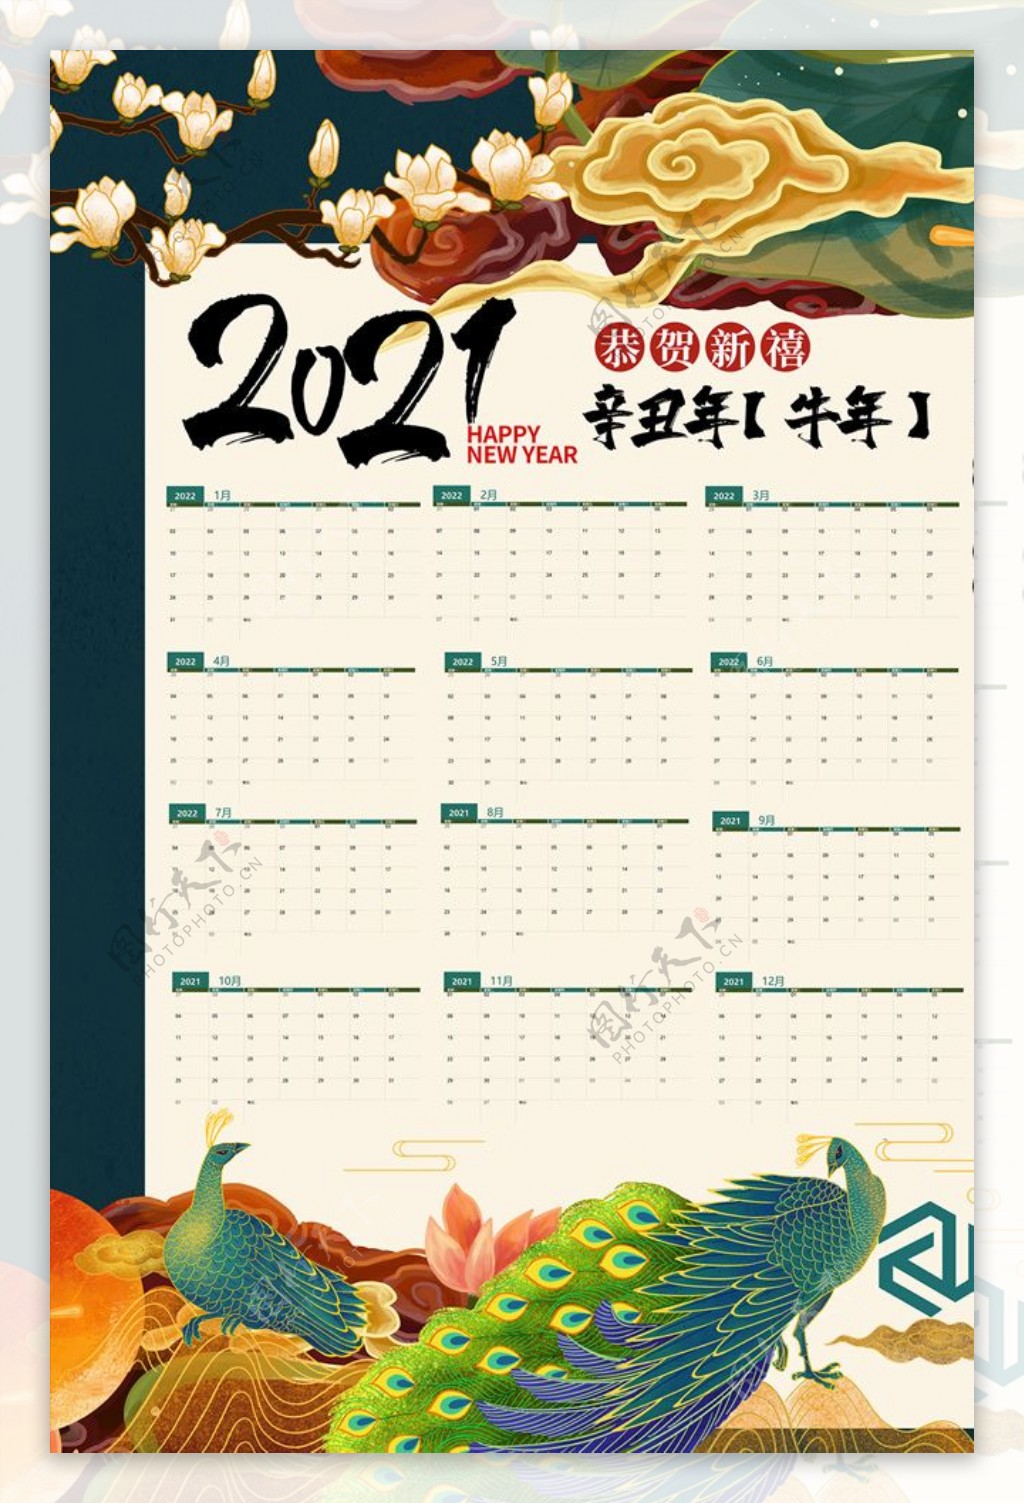 2021年日历